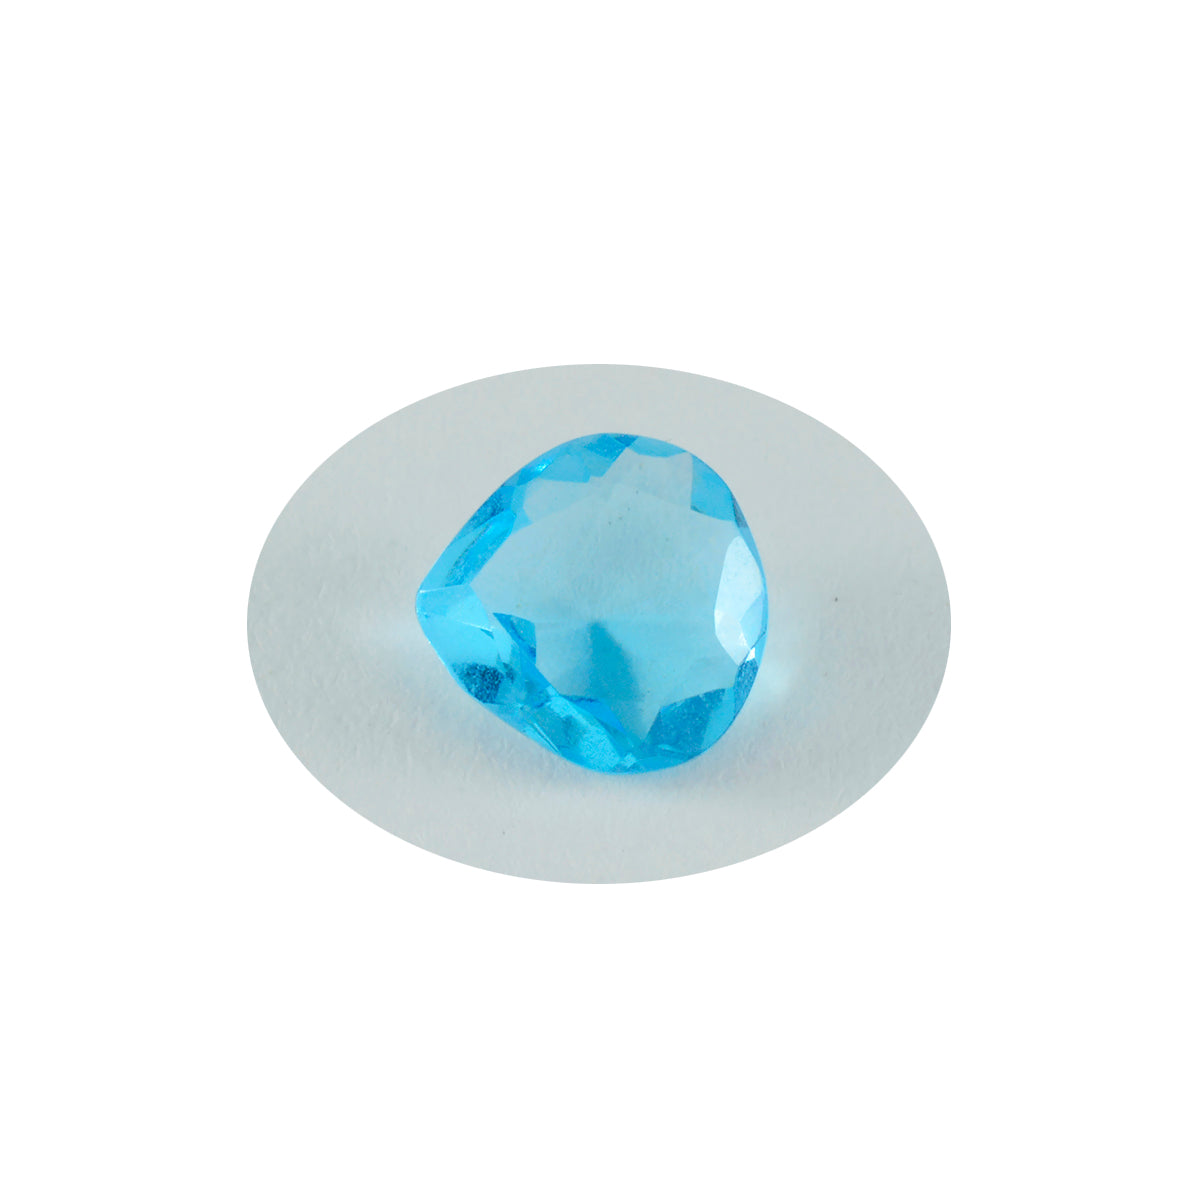 Riyogems 1 Stück blauer Topas, CZ, facettiert, 12 x 12 mm, Herzform, tolle Qualitäts-Edelsteine